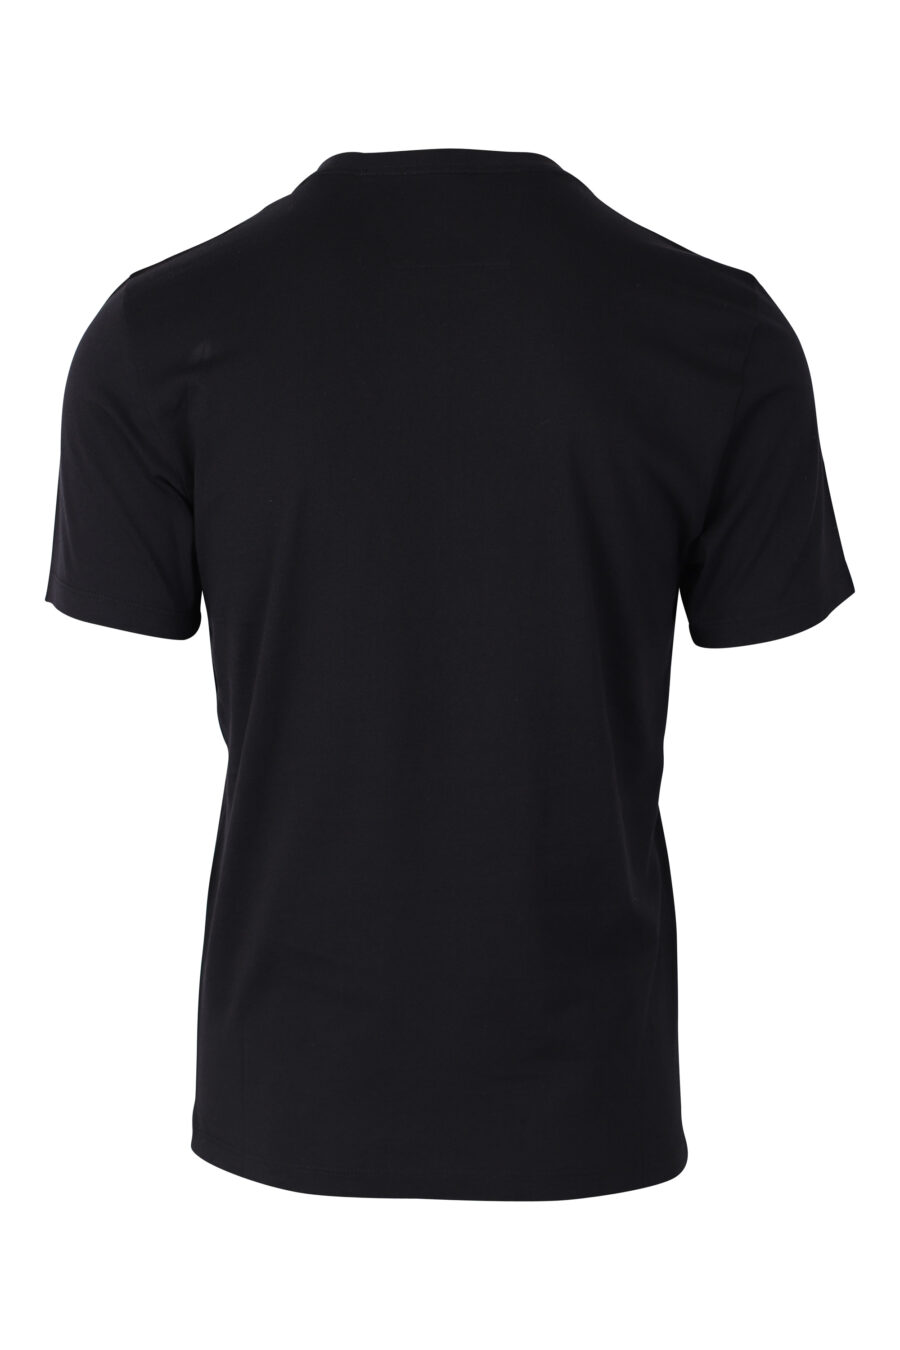 Schwarzes T-Shirt mit Logoaufnäher - IMG 2383